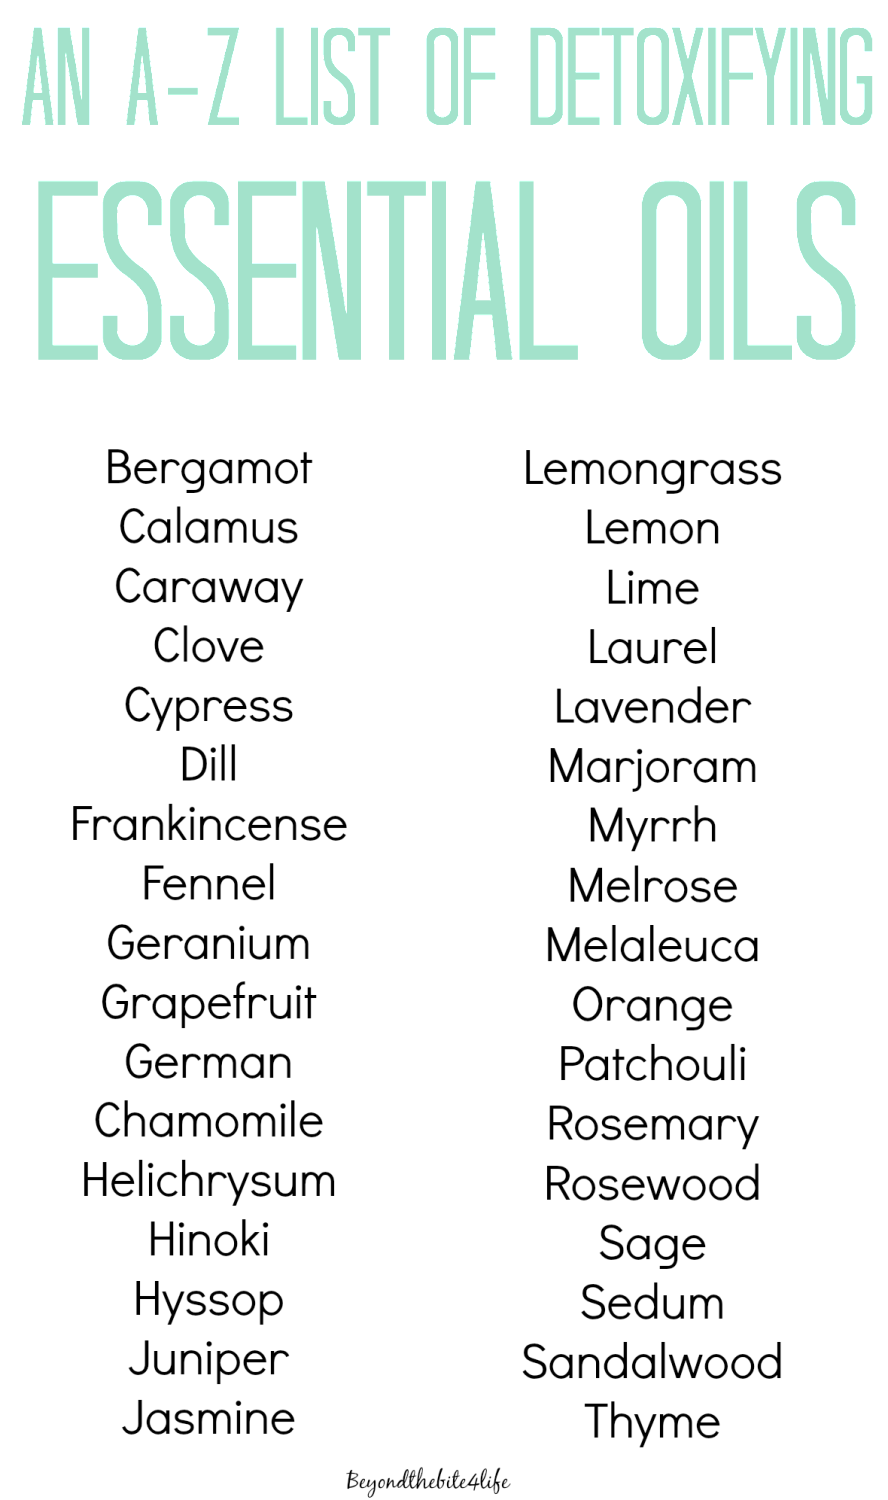 Essentialoils